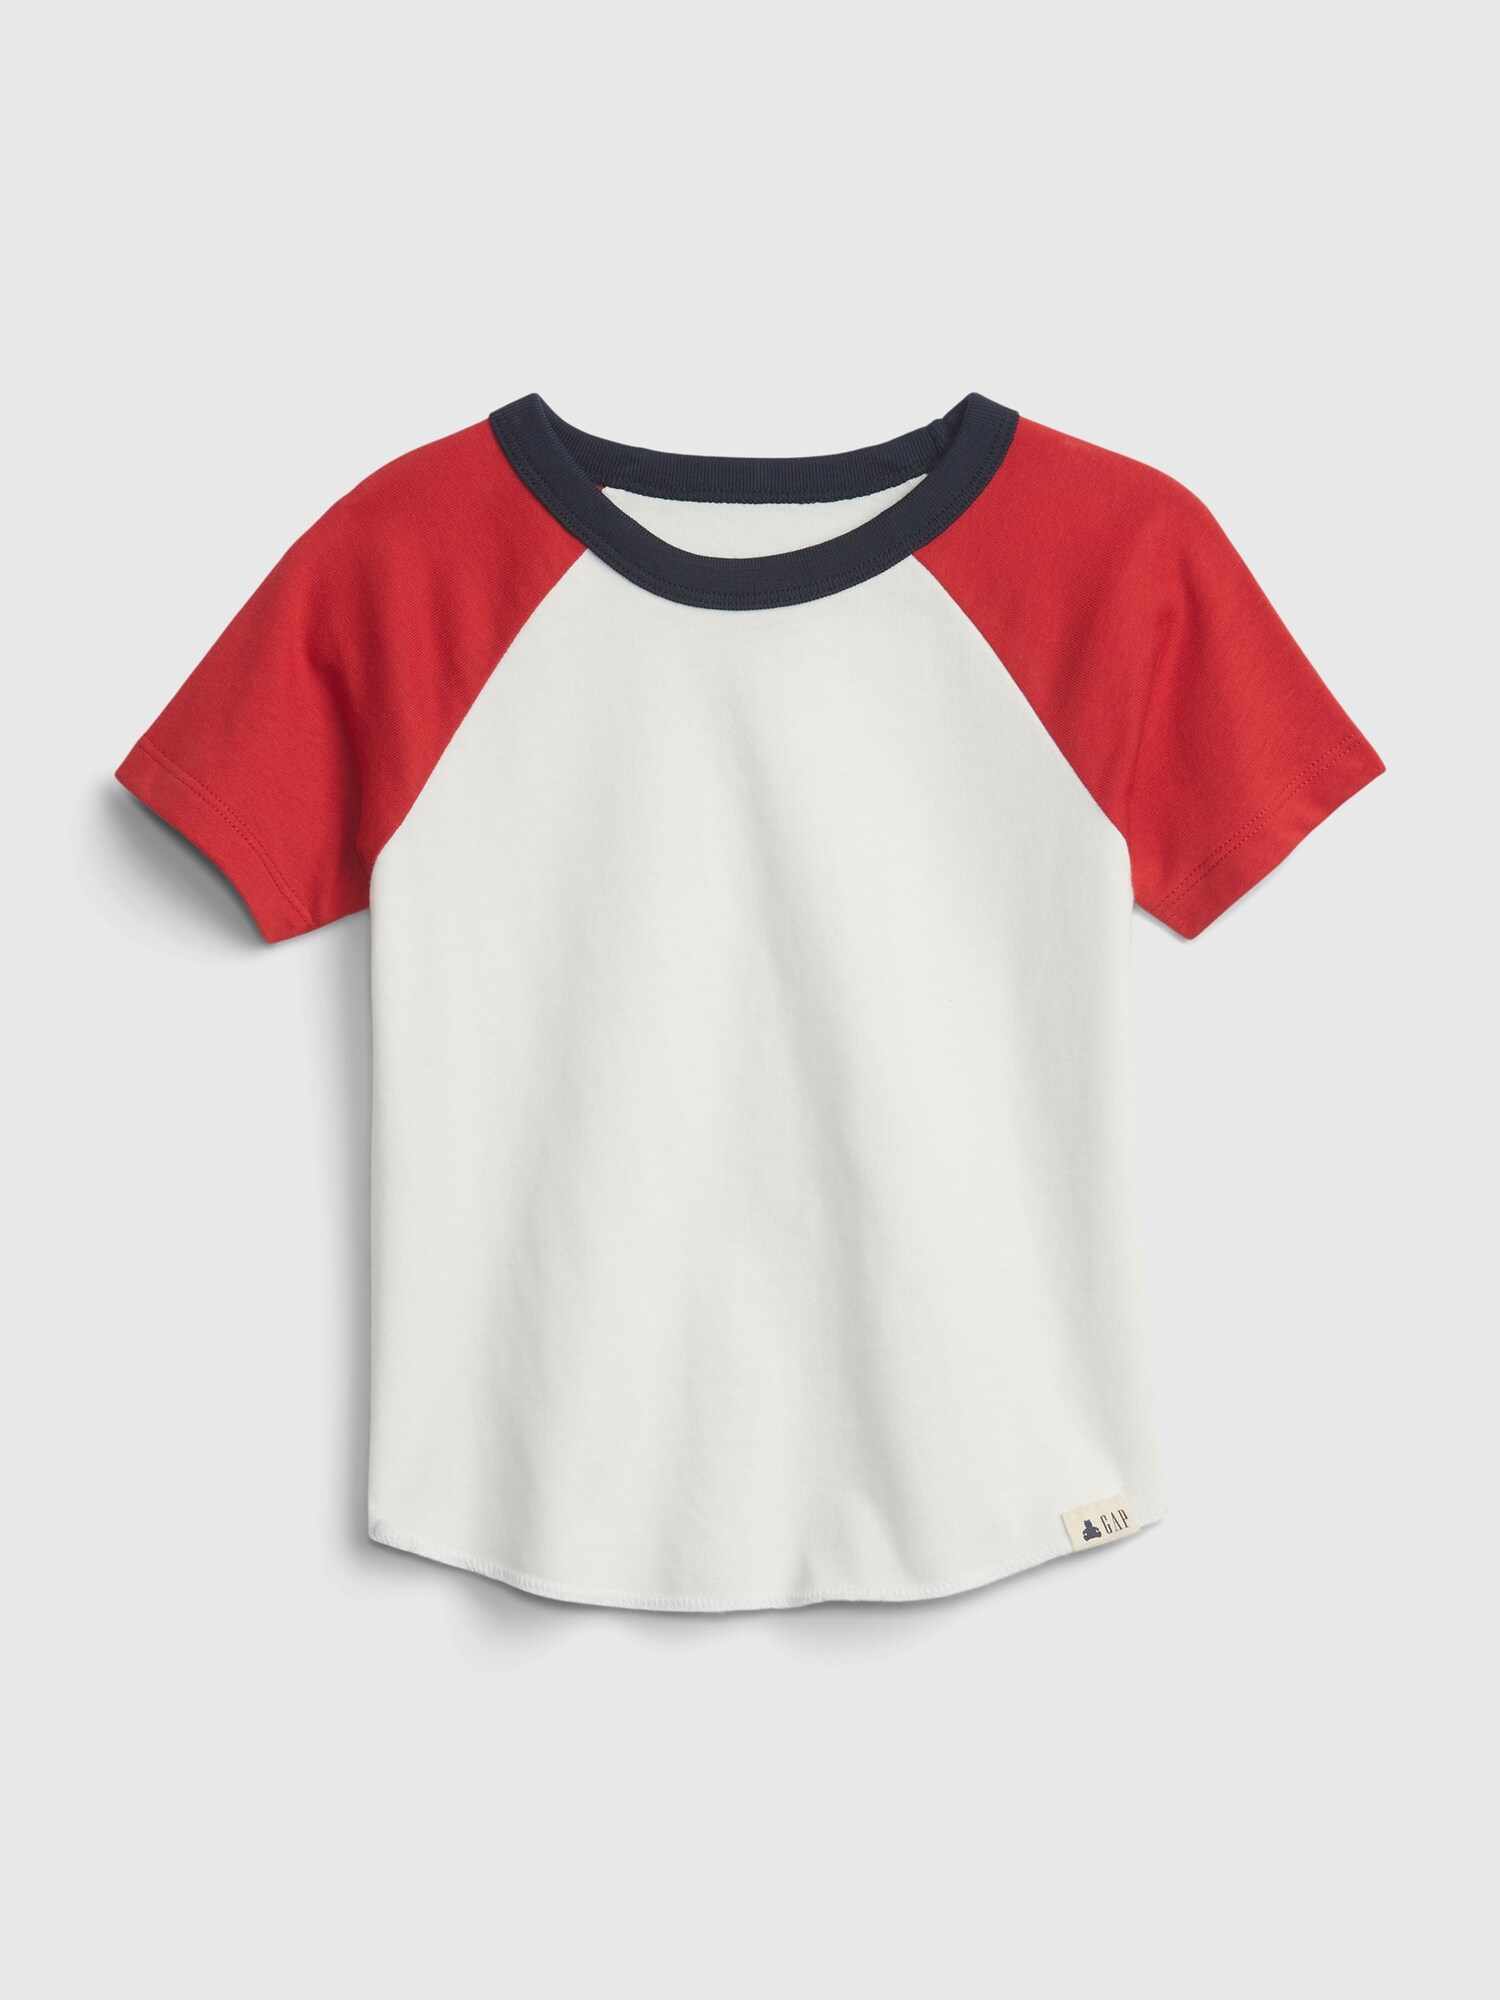 オーガニックコットン100% ブラナン プレイタイムフェイバリット ラグラン Tシャツ (幼児)